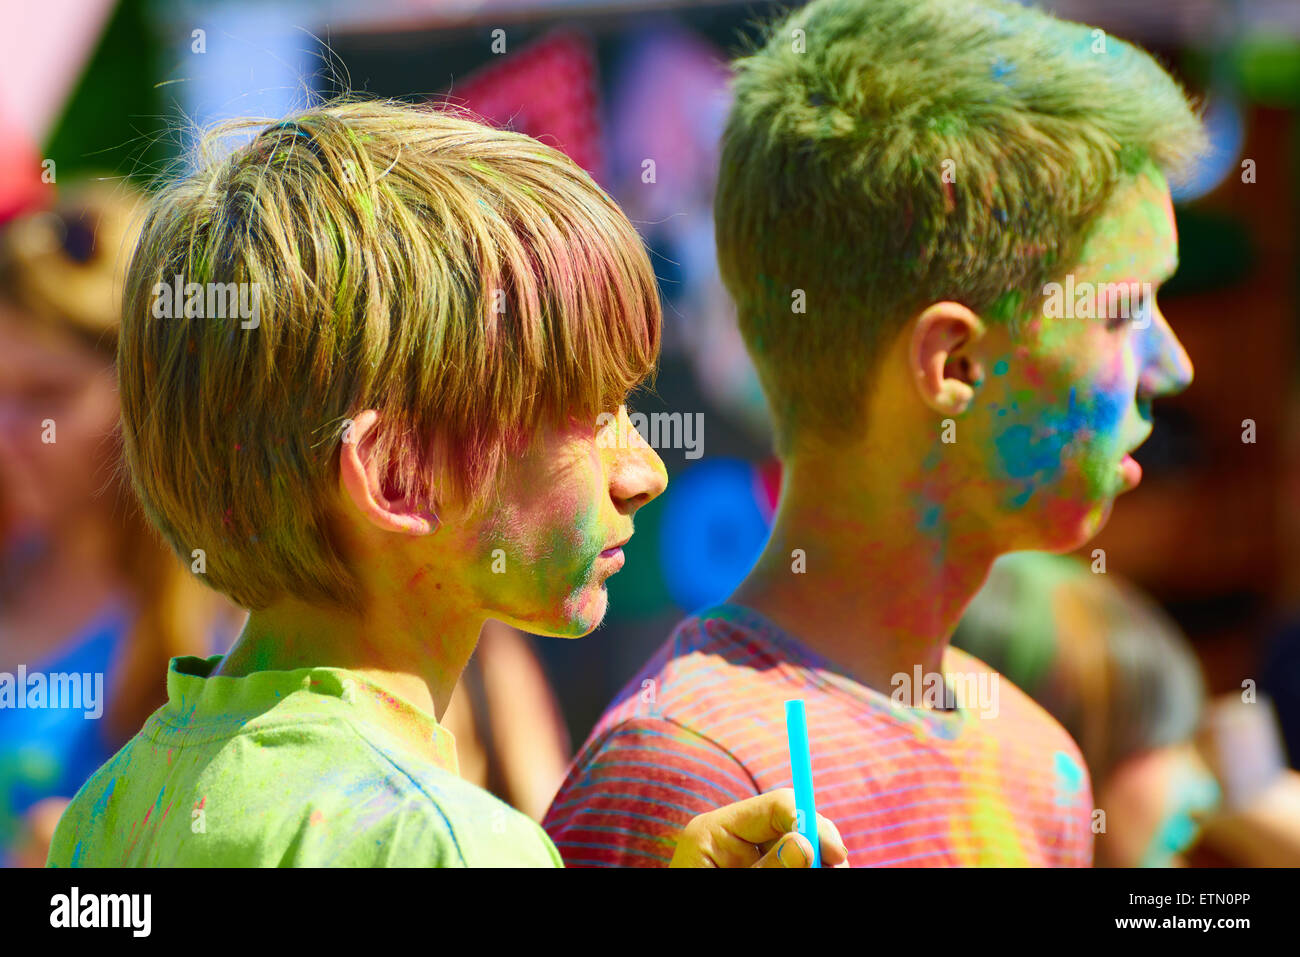 Holi Festival des couleurs, l'événement est programmé pour la Journée de la Russie. Kaliningrad Banque D'Images